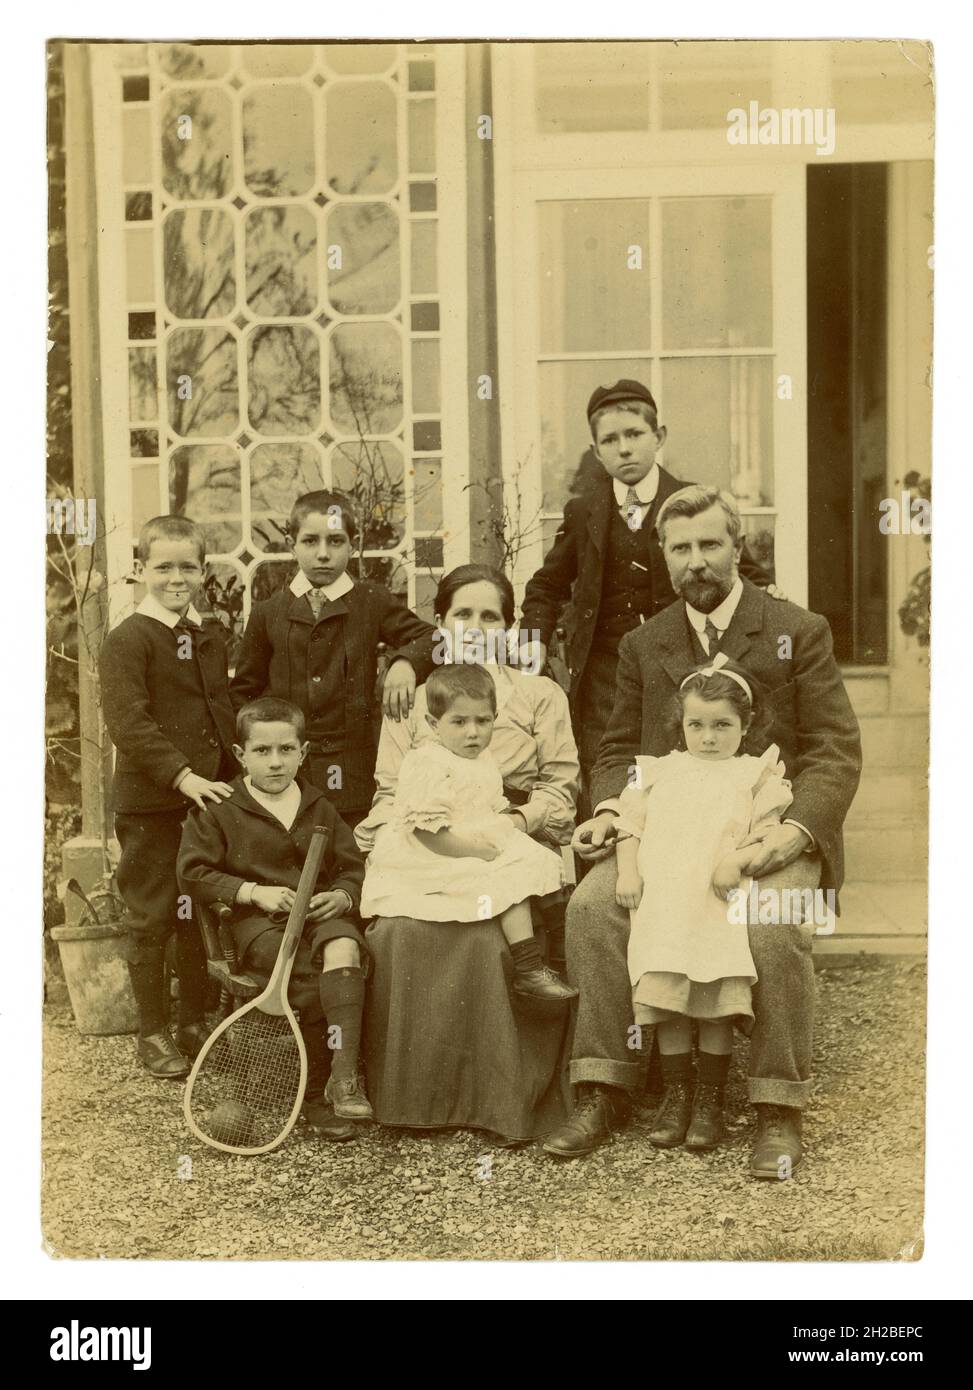 Originales edwardianisches Foto einer großen, attraktiven Familie, 6 Kinder, meist Jungen, die vor einem großen Haus sitzen. Die Mutter hat ein Baby oder Kleinkind auf dem Schoß, das in Mädchenkleidung gekleidet ist, aber ein Junge sein könnte, da kleine Kinder zu diesem Zeitpunkt gleich gekleidet waren. Wohlhabende Reiche sind gut für eine Familie. Großbritannien ca. 1908, Großbritannien Stockfoto